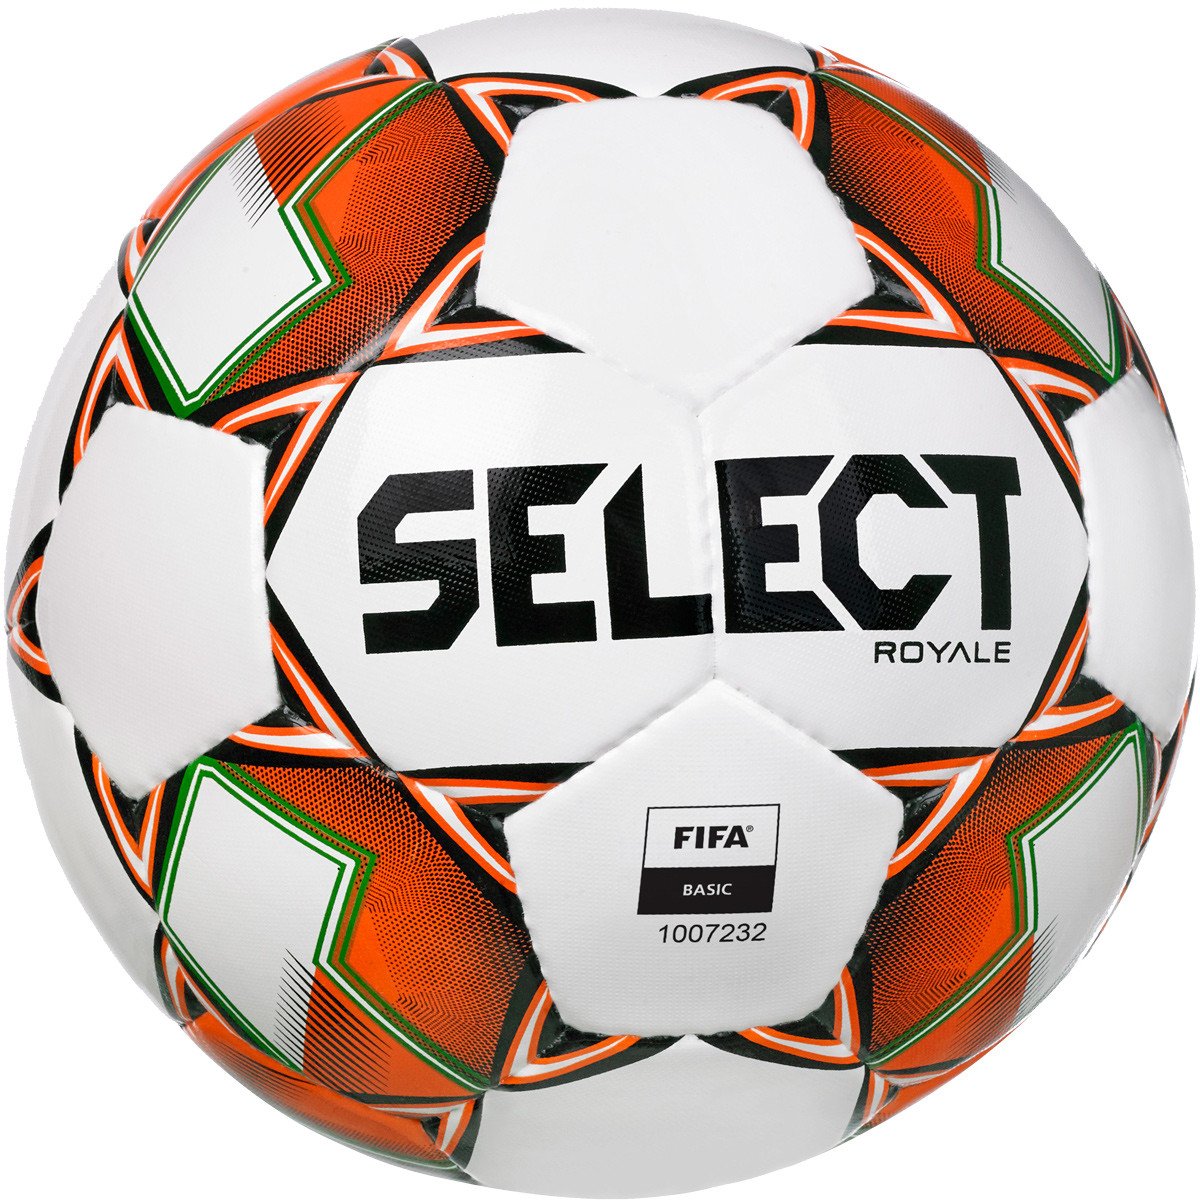 Select Royale v22 Fodbold